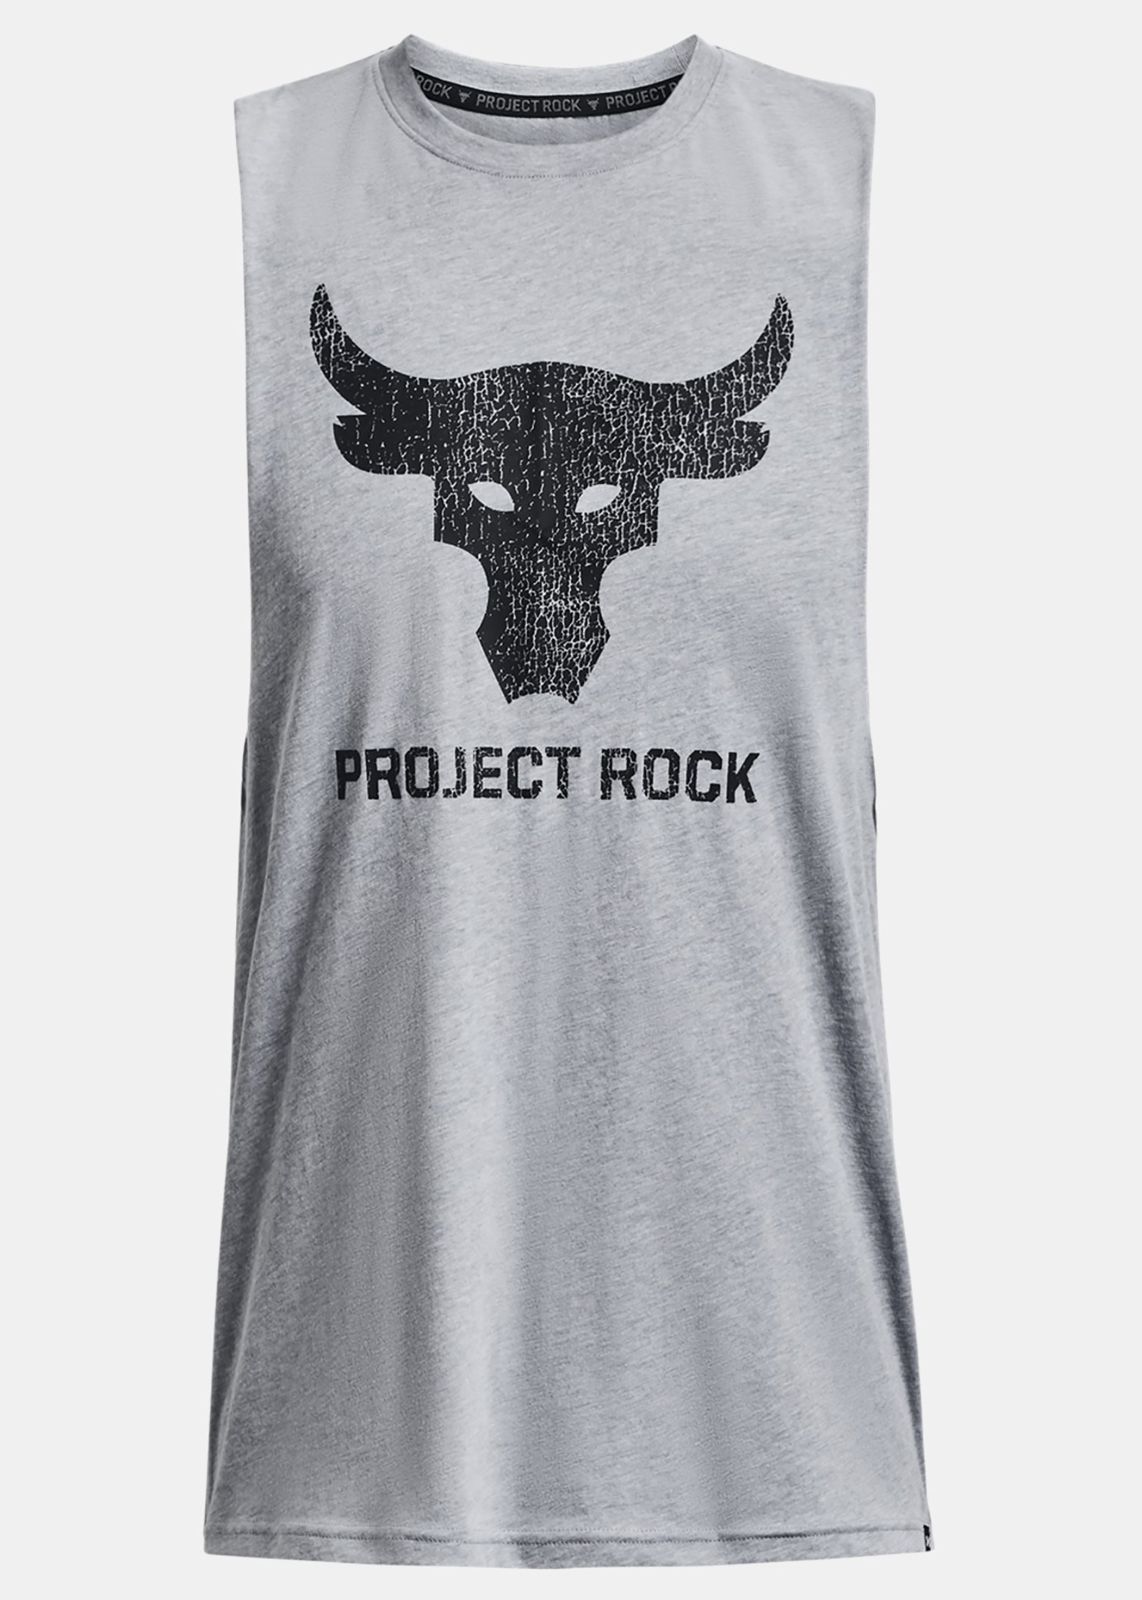  גופיית לוגו Project Rock של UNDER ARMOUR